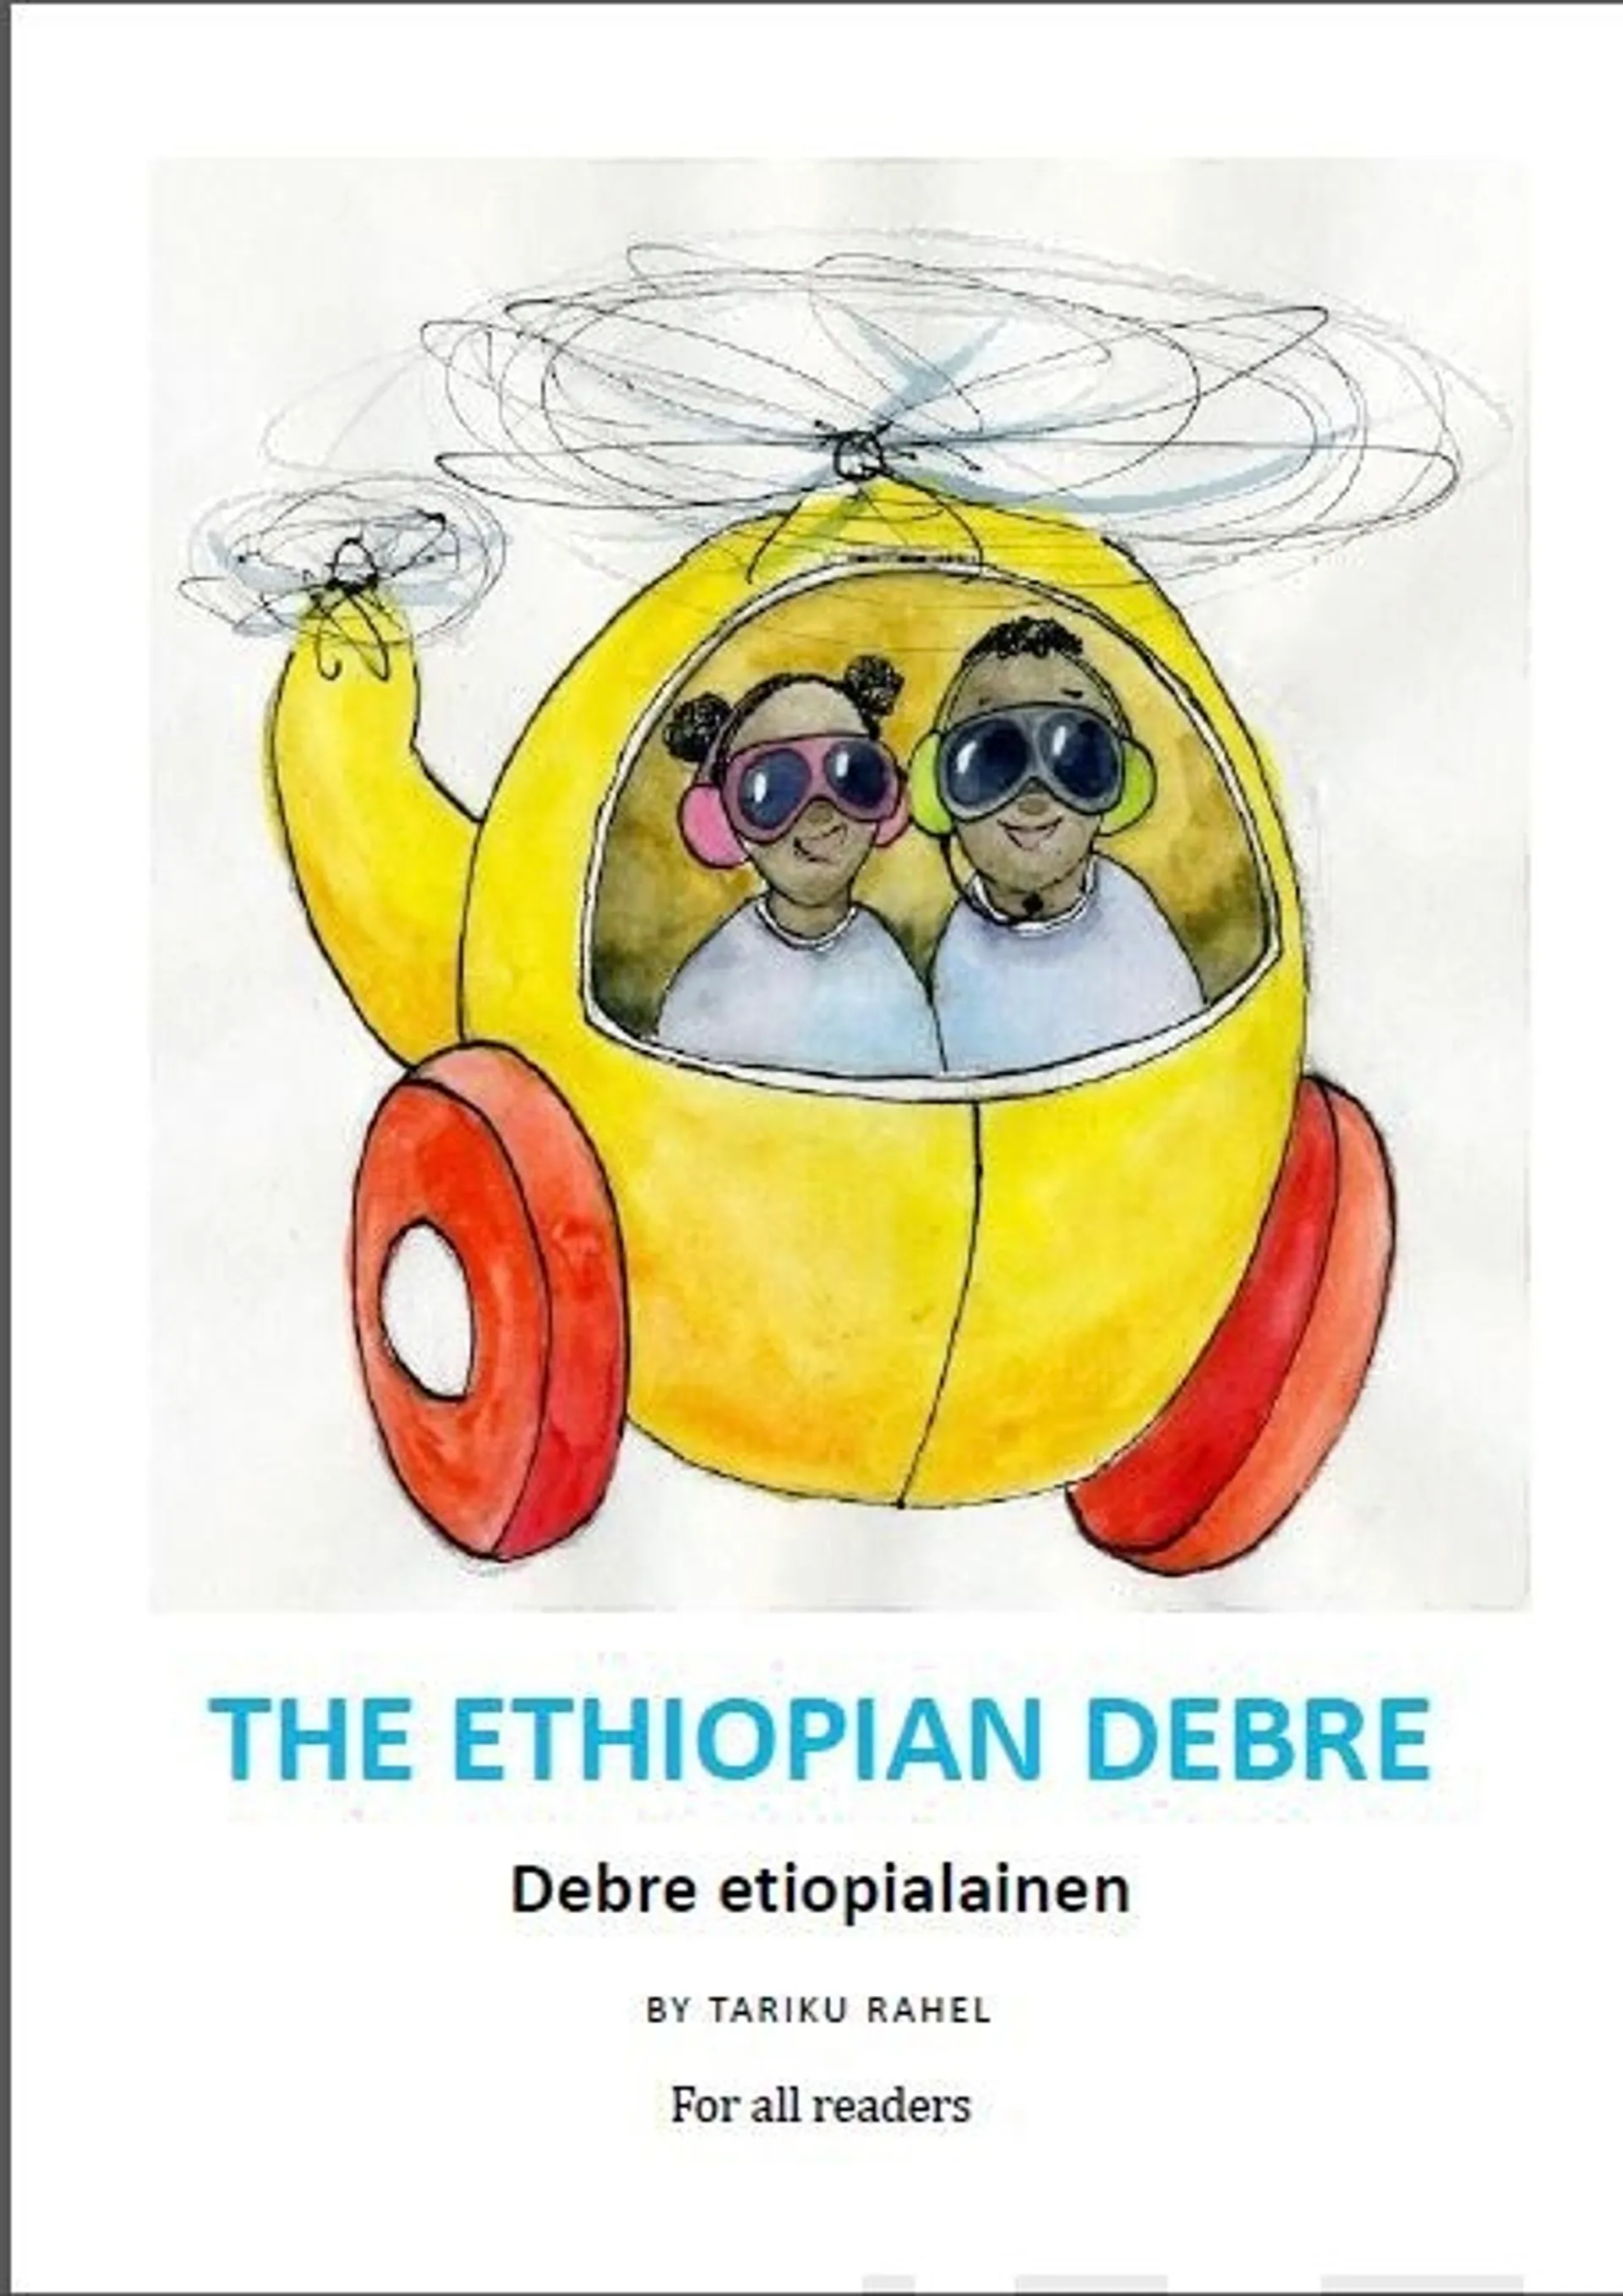 Tariku, The Ethiopian Debre - Debre etiopialainen